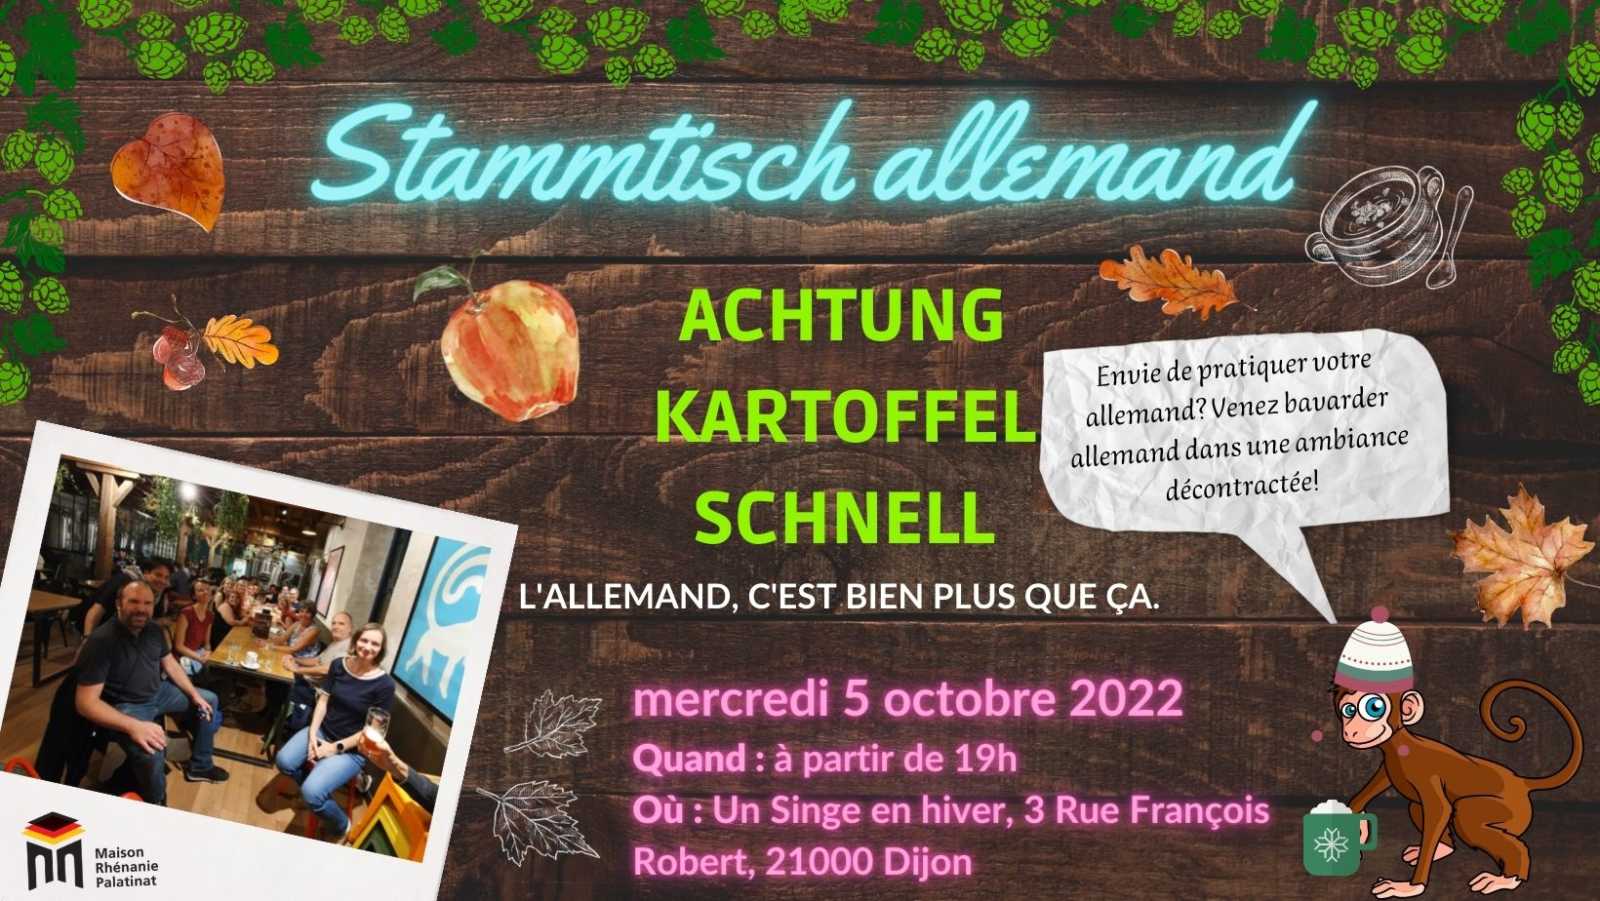 Mercredi 5 octobre 2022 à 19h : Stammtisch Allemand #2